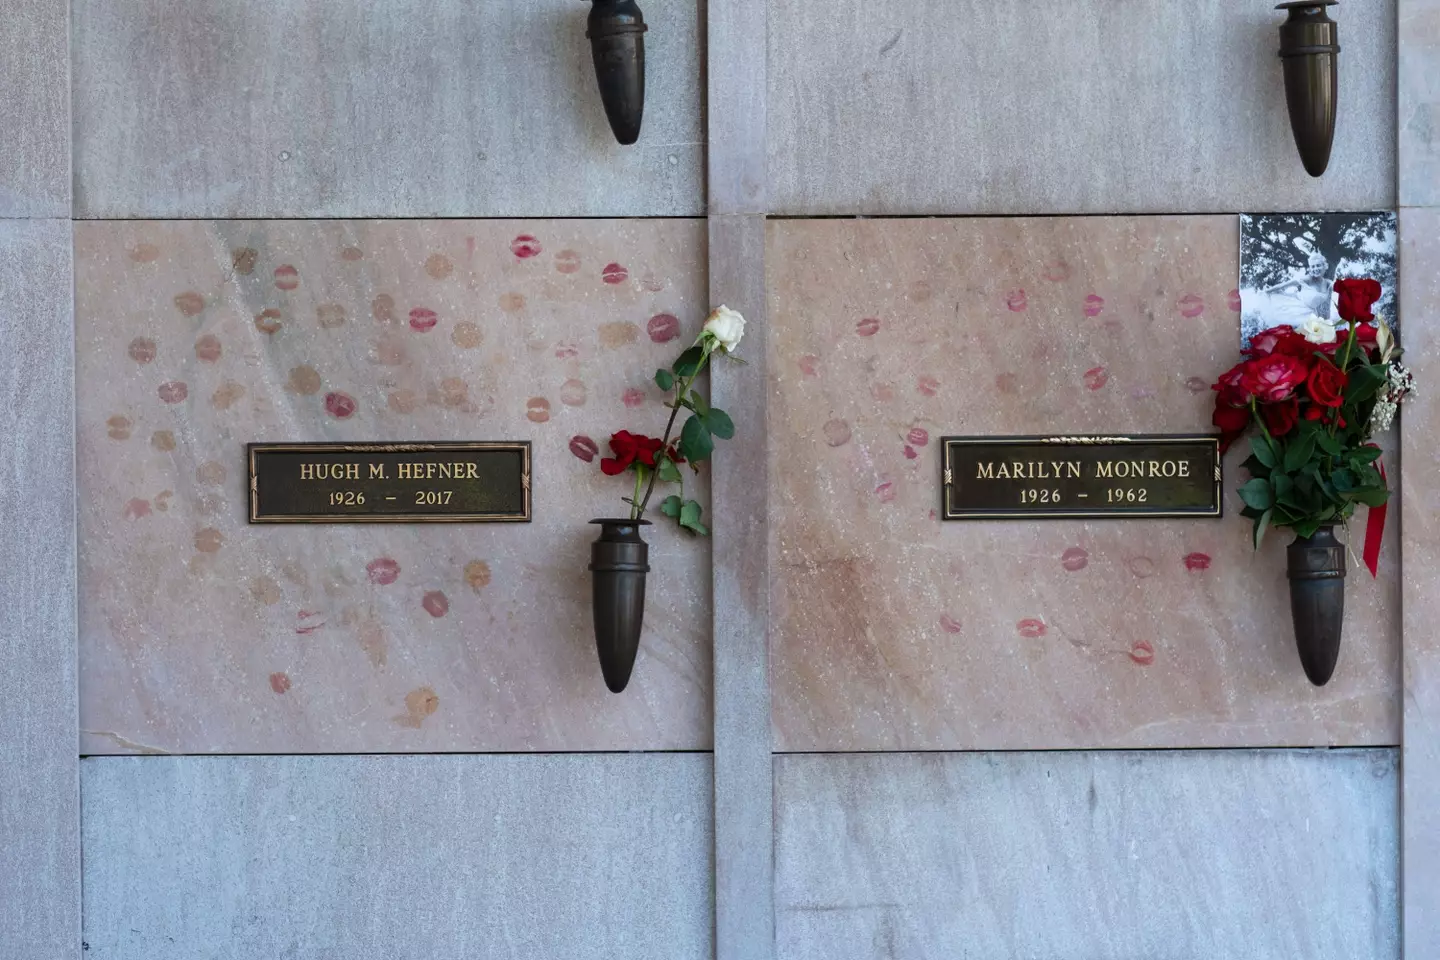 Hugh Hefner and Marilyn Monroe's adjacent resting places.